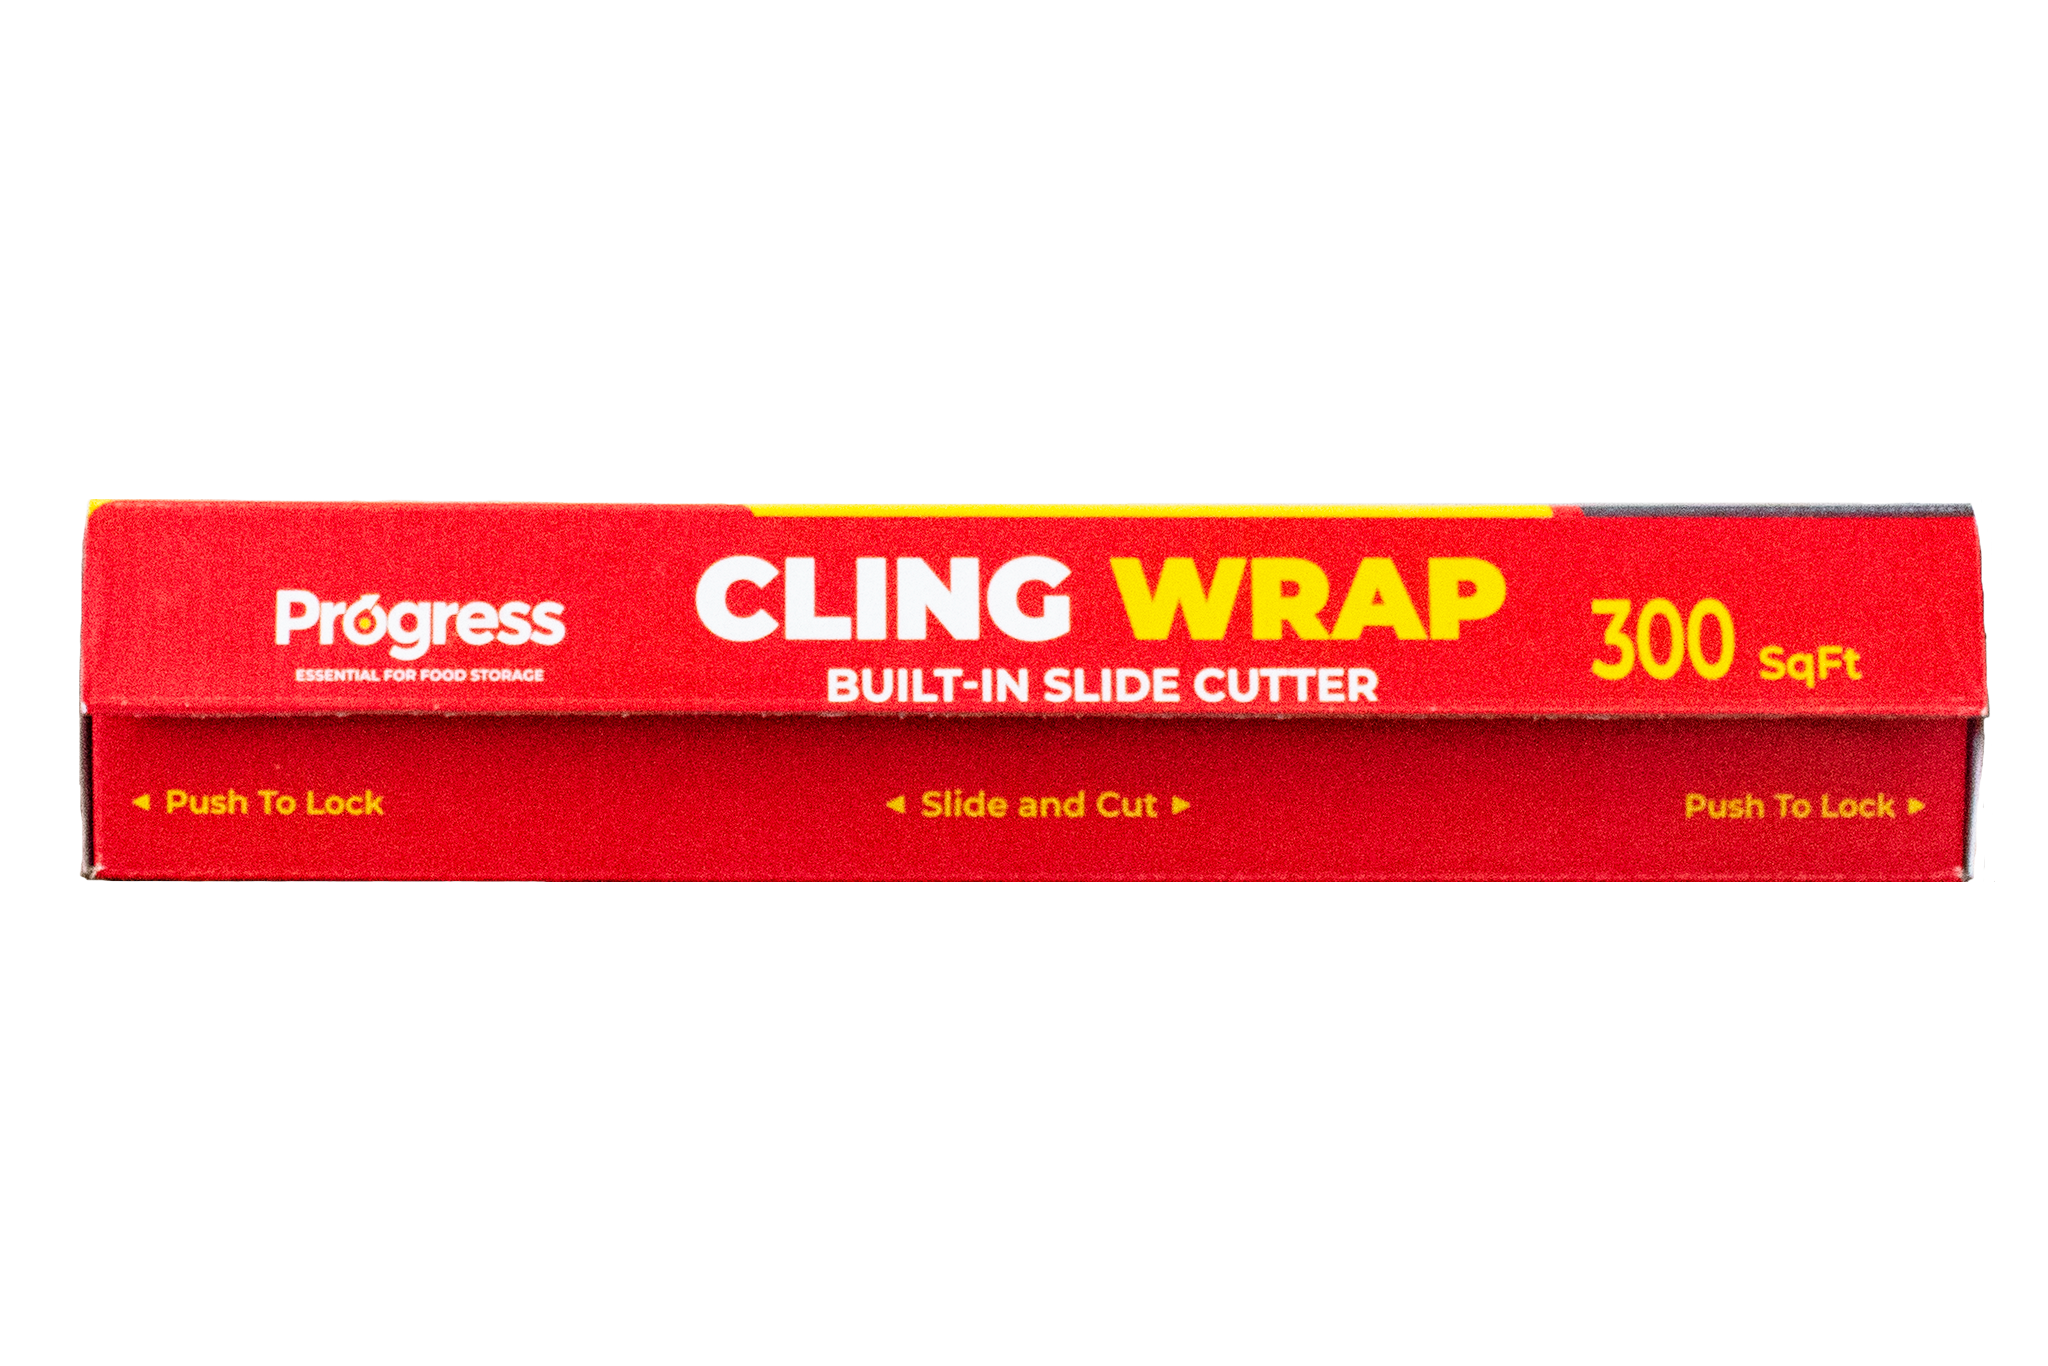 Progress Cling Wrap – Progress Essentials